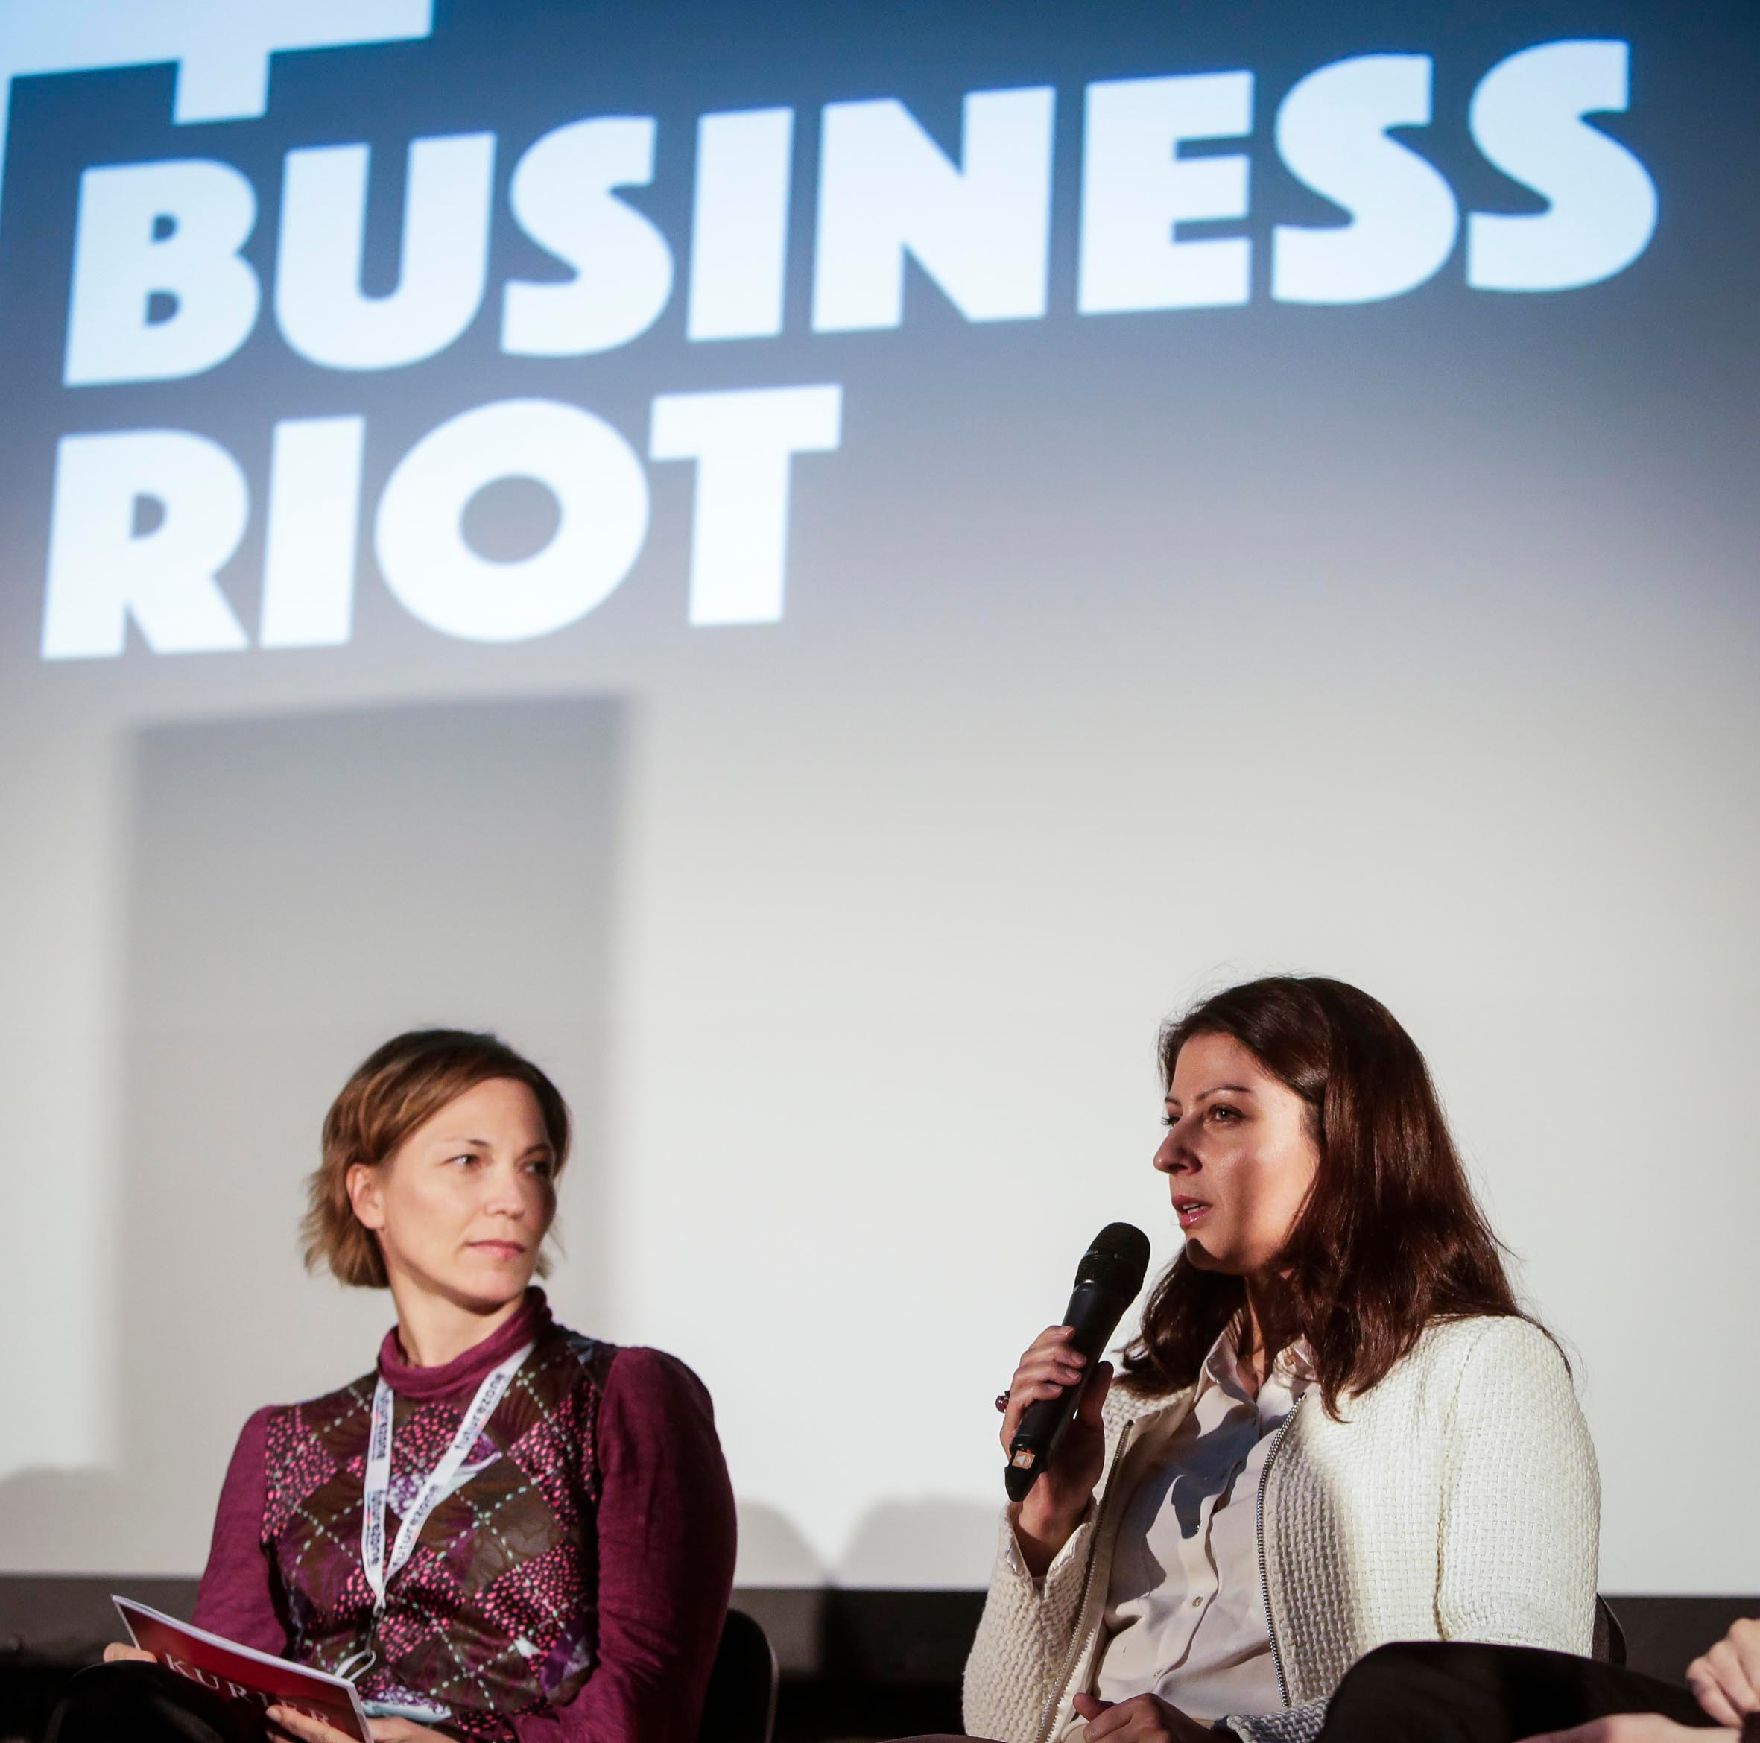 Am 20. Oktober 2016 nahm Staatssekretärin Muna Duzdar (r.) an der KURIER Diskussion Business Riot Festival 2016 zum Thema Gegen Hass im Netz teil.